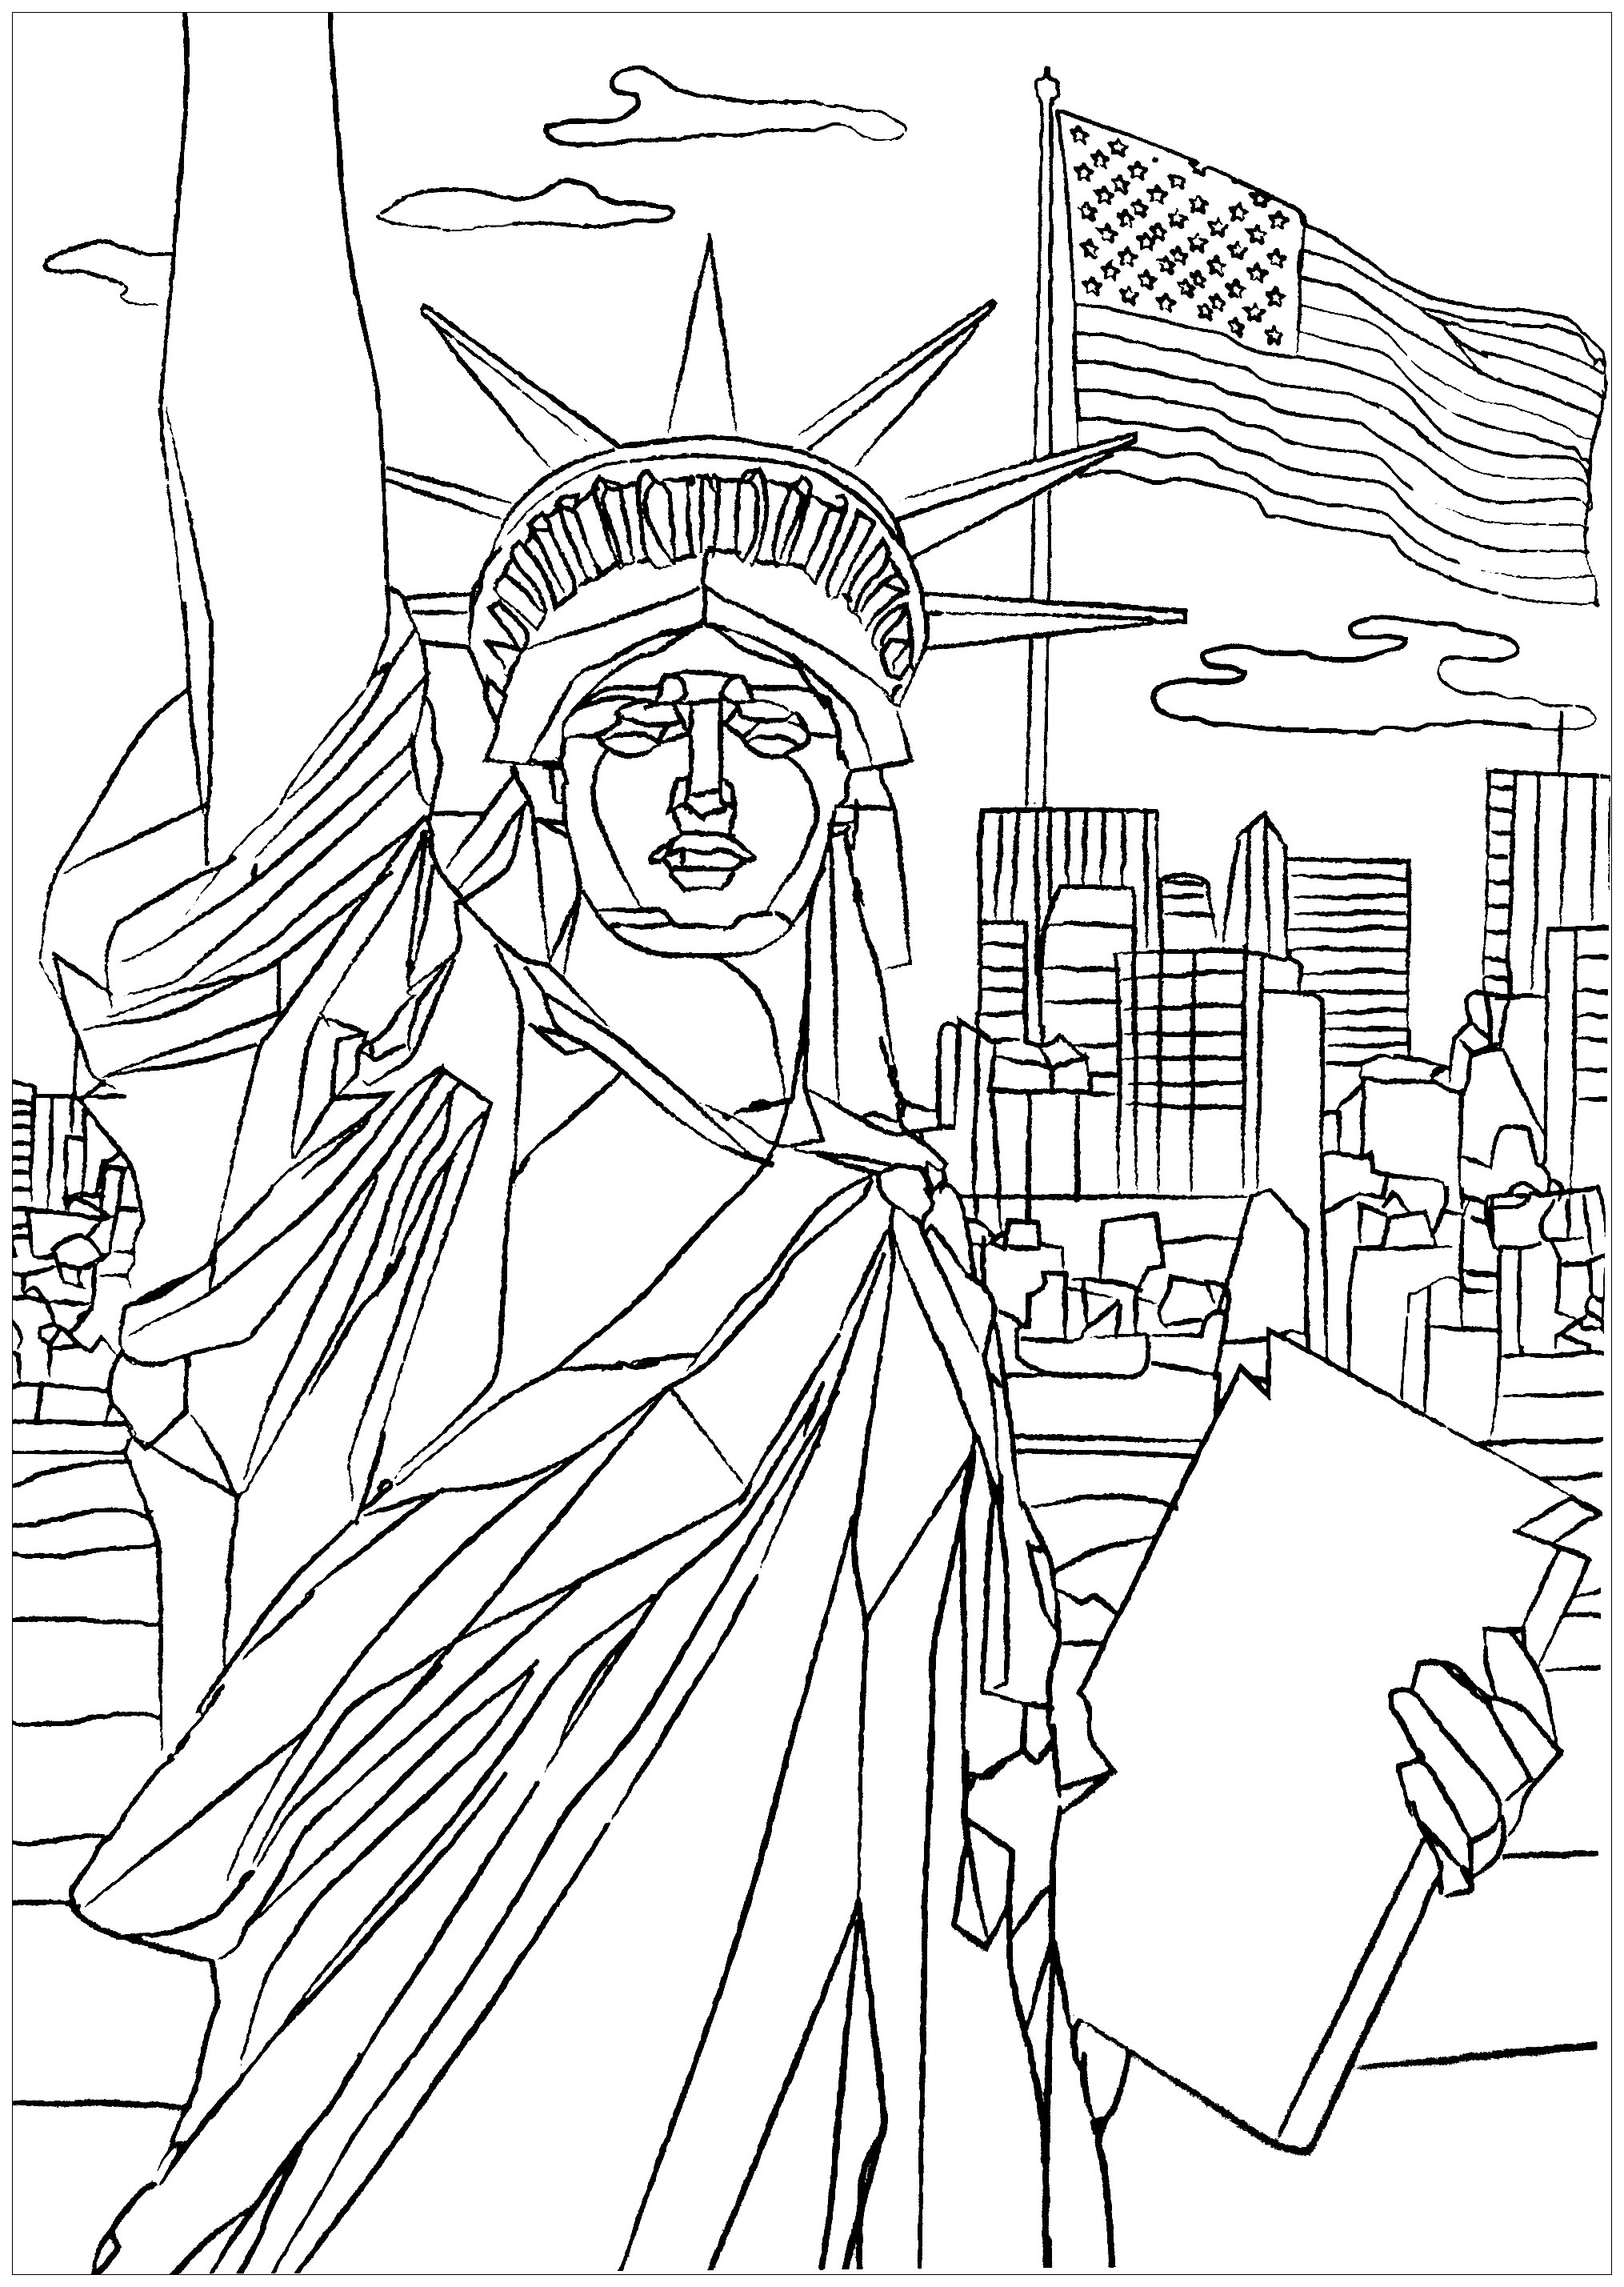 'Die Freiheitsstatue, die die Welt erleuchtet' war ein Freundschaftsgeschenk des französischen Volkes an die Vereinigten Staaten. Farbe 'Miss Liberty' und die Wolkenkratzer an der Spitze von Manhattan